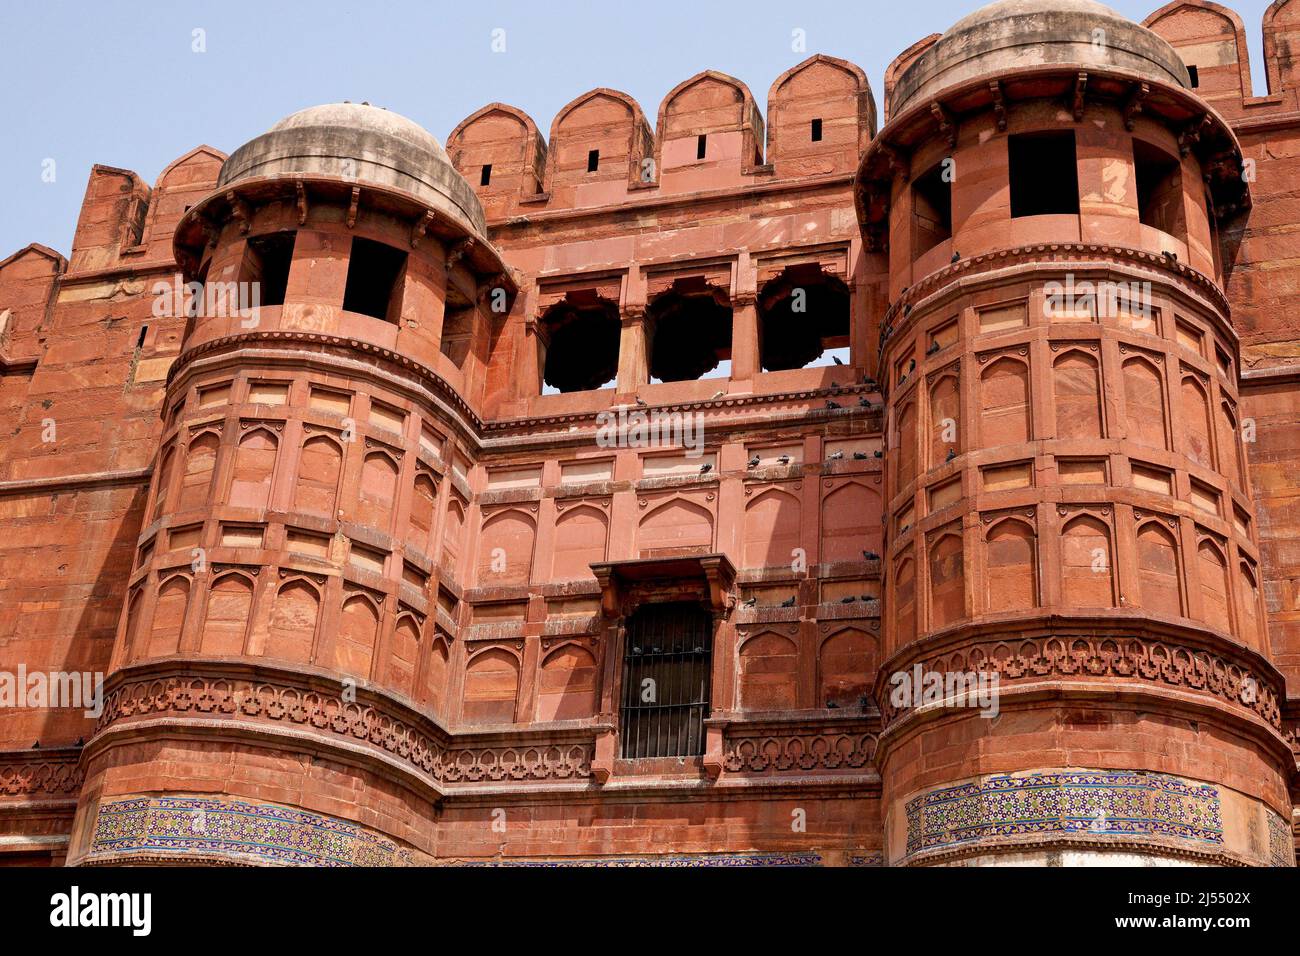 le fort d'Agra est un site classé au patrimoine mondial de l'UNESCO dans la ville d'Agra, en Inde Banque D'Images